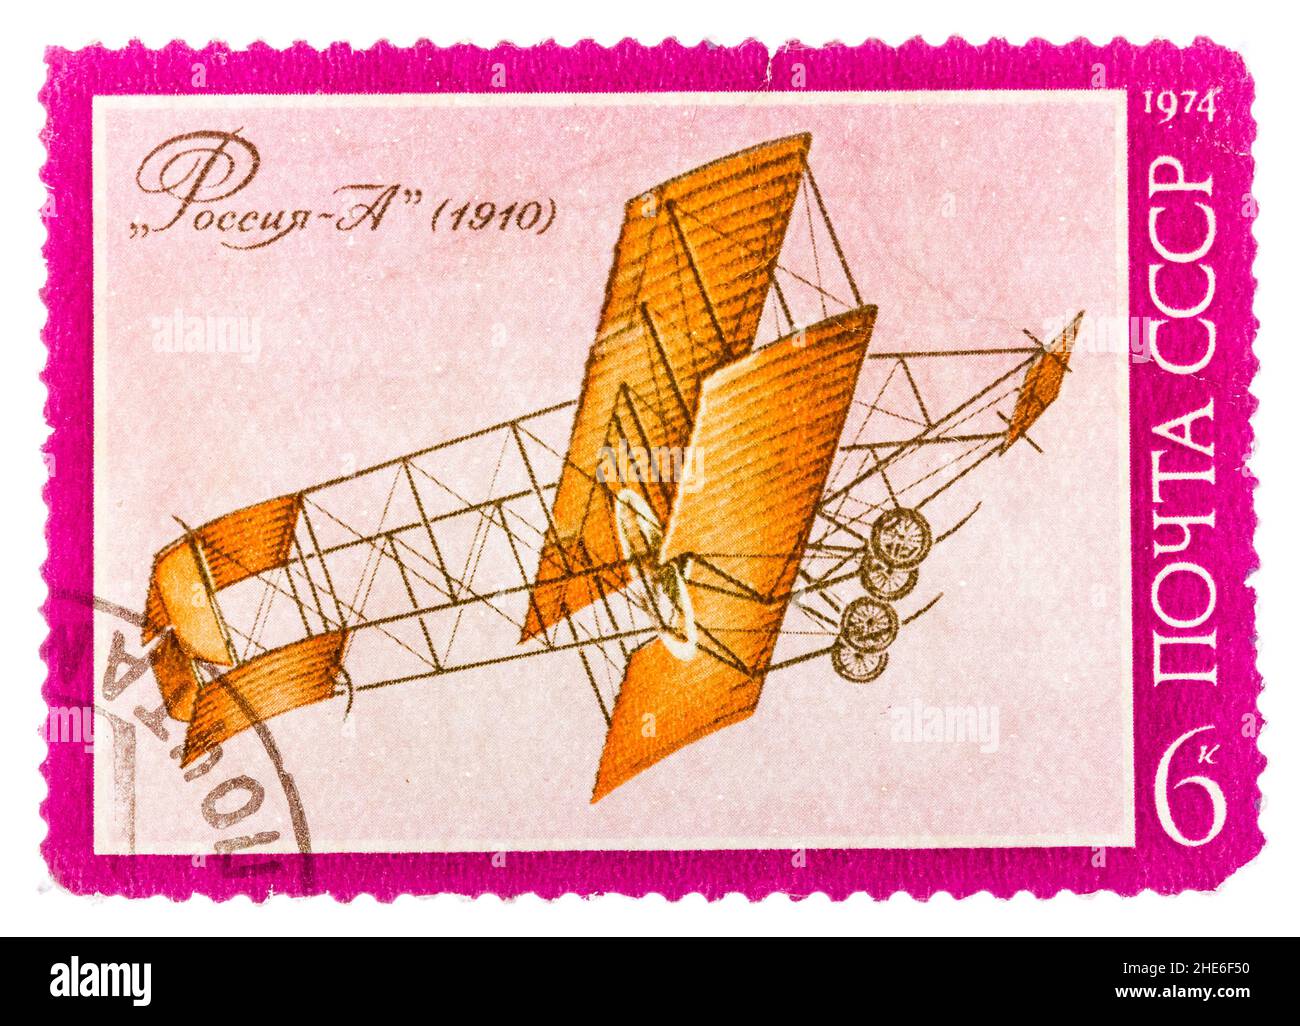 Il francobollo stampato dall'URSS (Russia) mostra velivoli Sikorsky con l'iscrizione "Russia A (1910)", della serie "la storia dell'aviazione in Russia" Foto Stock